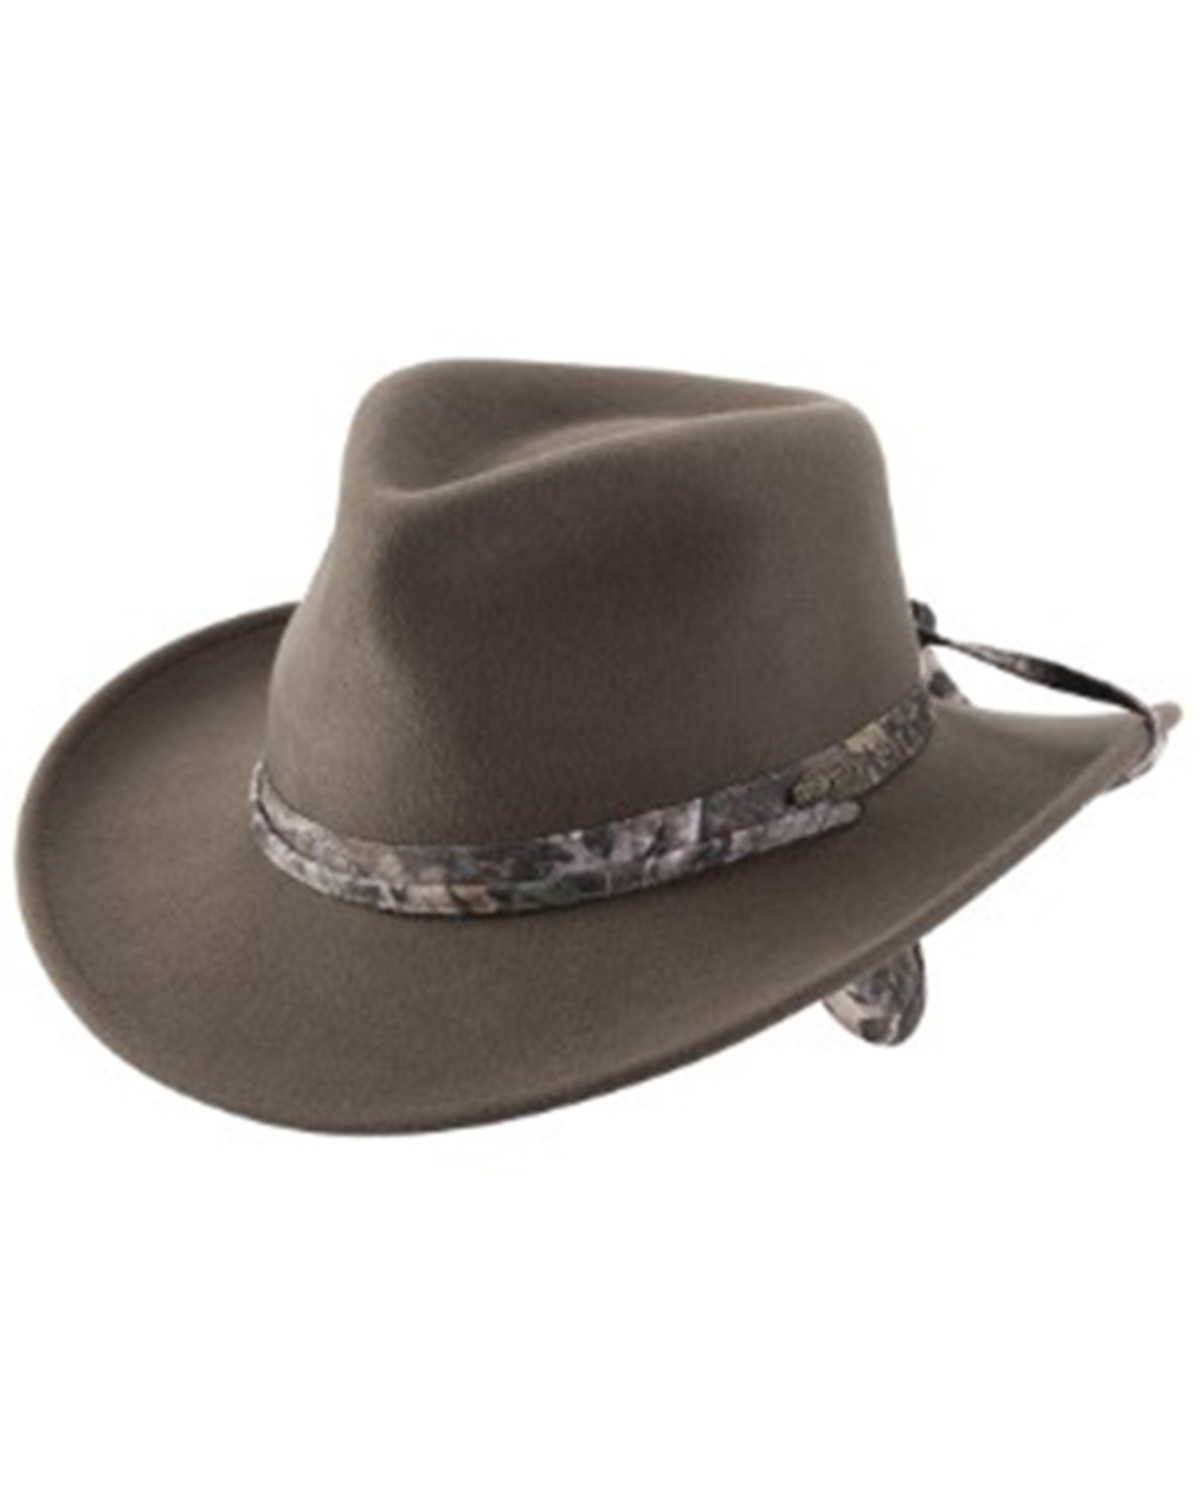 Bullhide Men's Wyoming Felt Western Fashion Hat